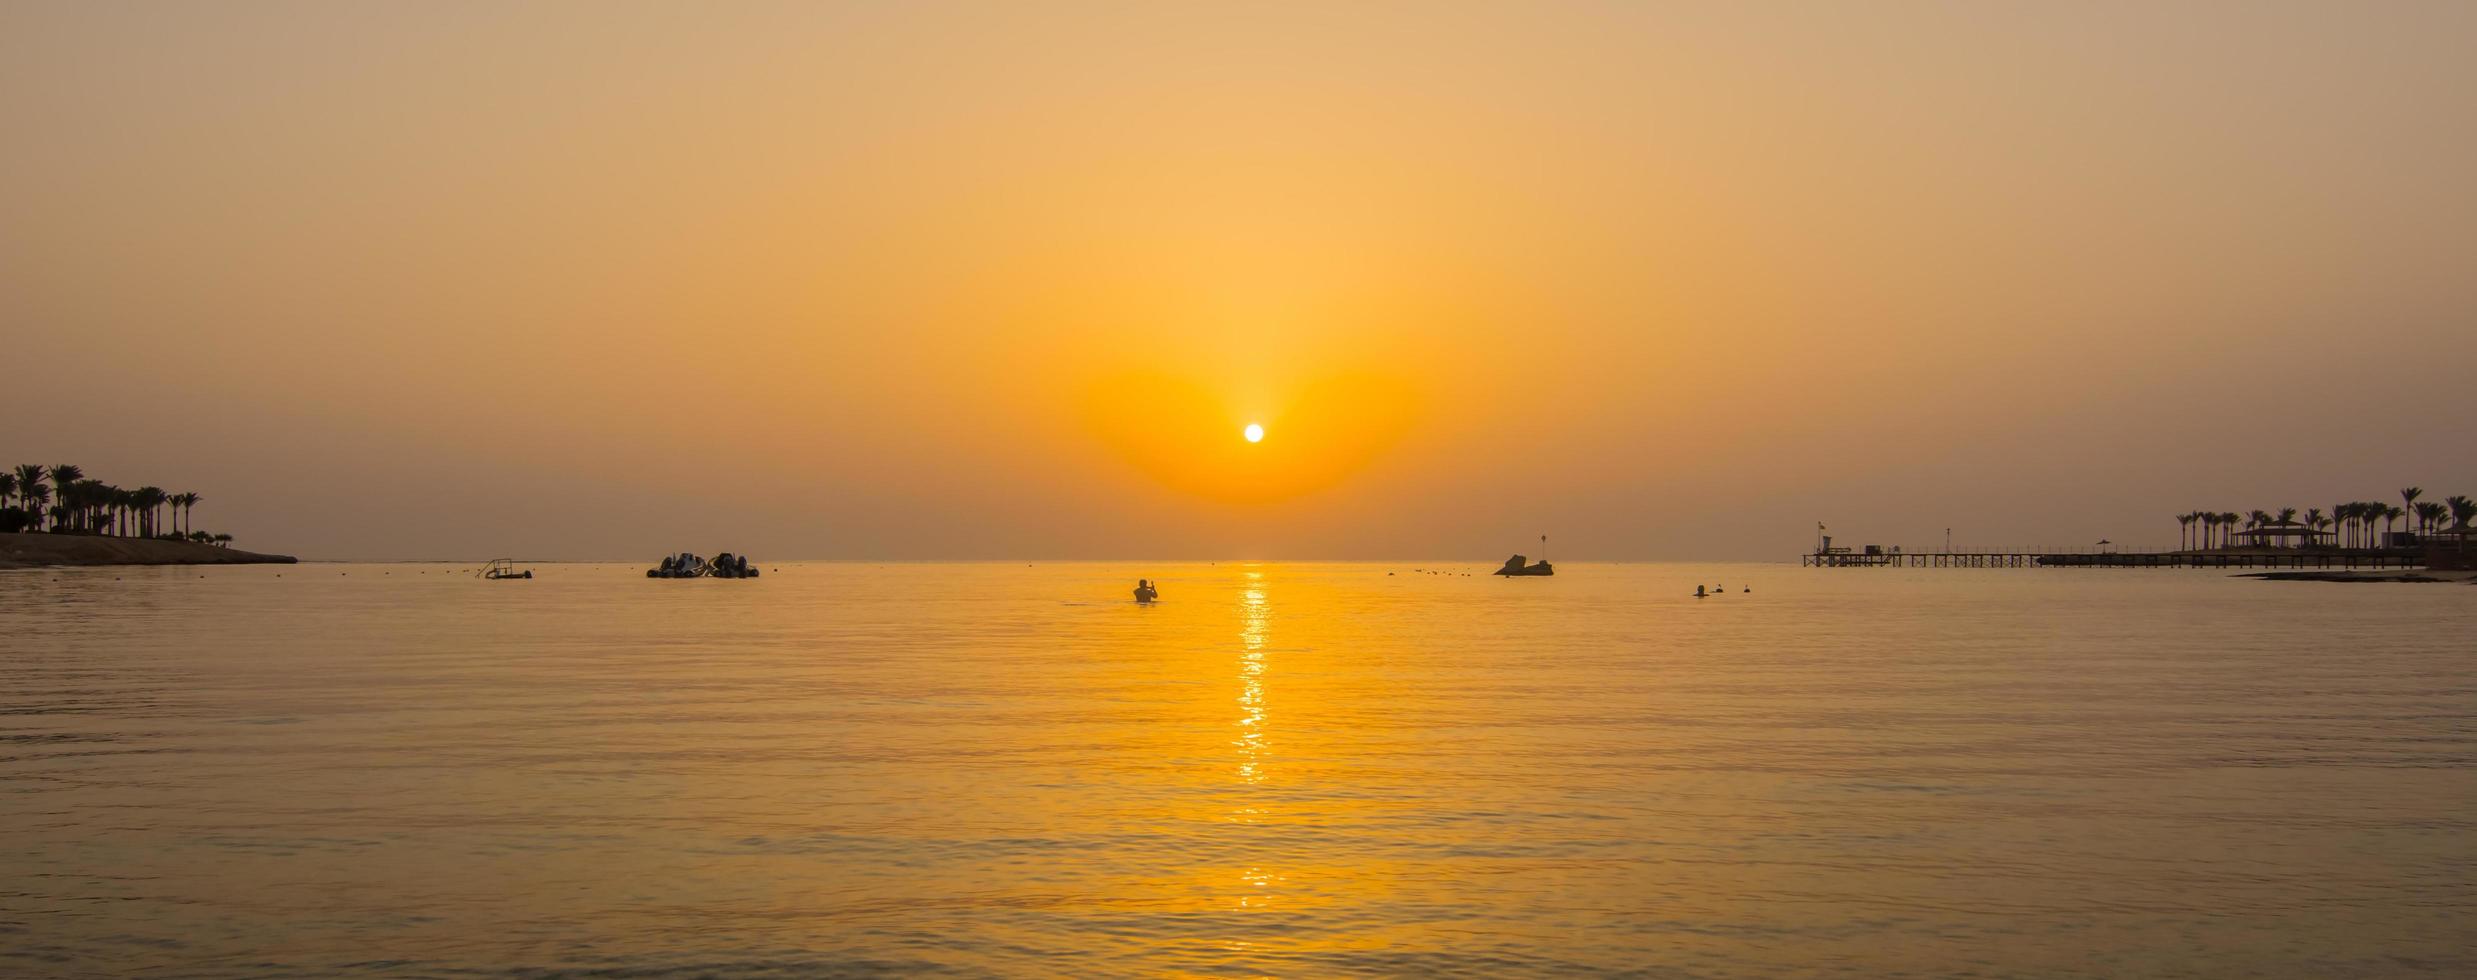 mjuk vågor på de hav under värma soluppgång på semester i egypten panorama foto